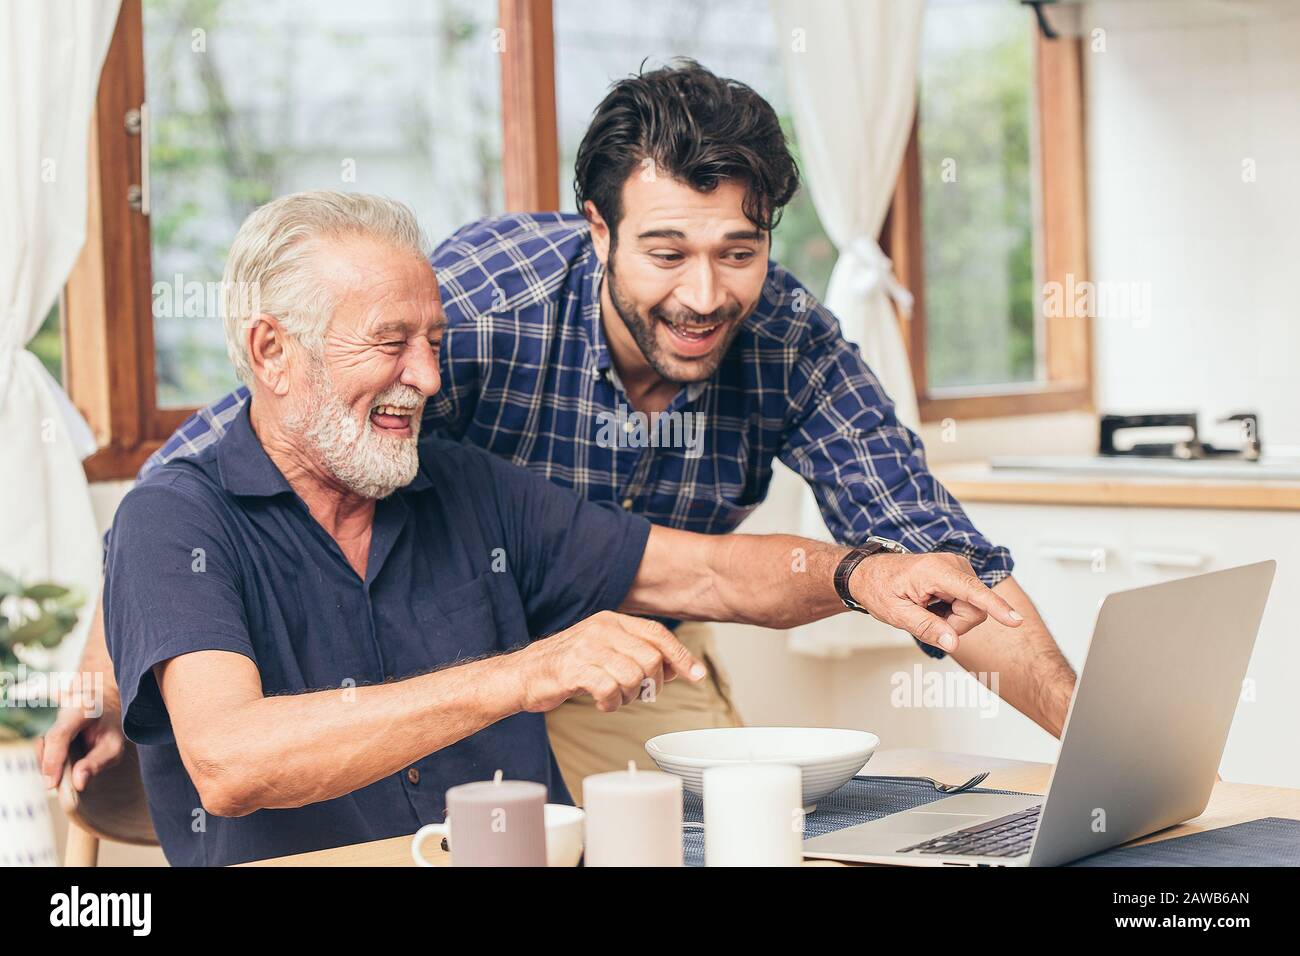 un vieil homme souriant heureux de regarder un ordinateur portable avec son fils. utiliser la technologie de communication pour le bonheur de la famille soins à domicile pour établir un lien avec d'autres concepts Banque D'Images